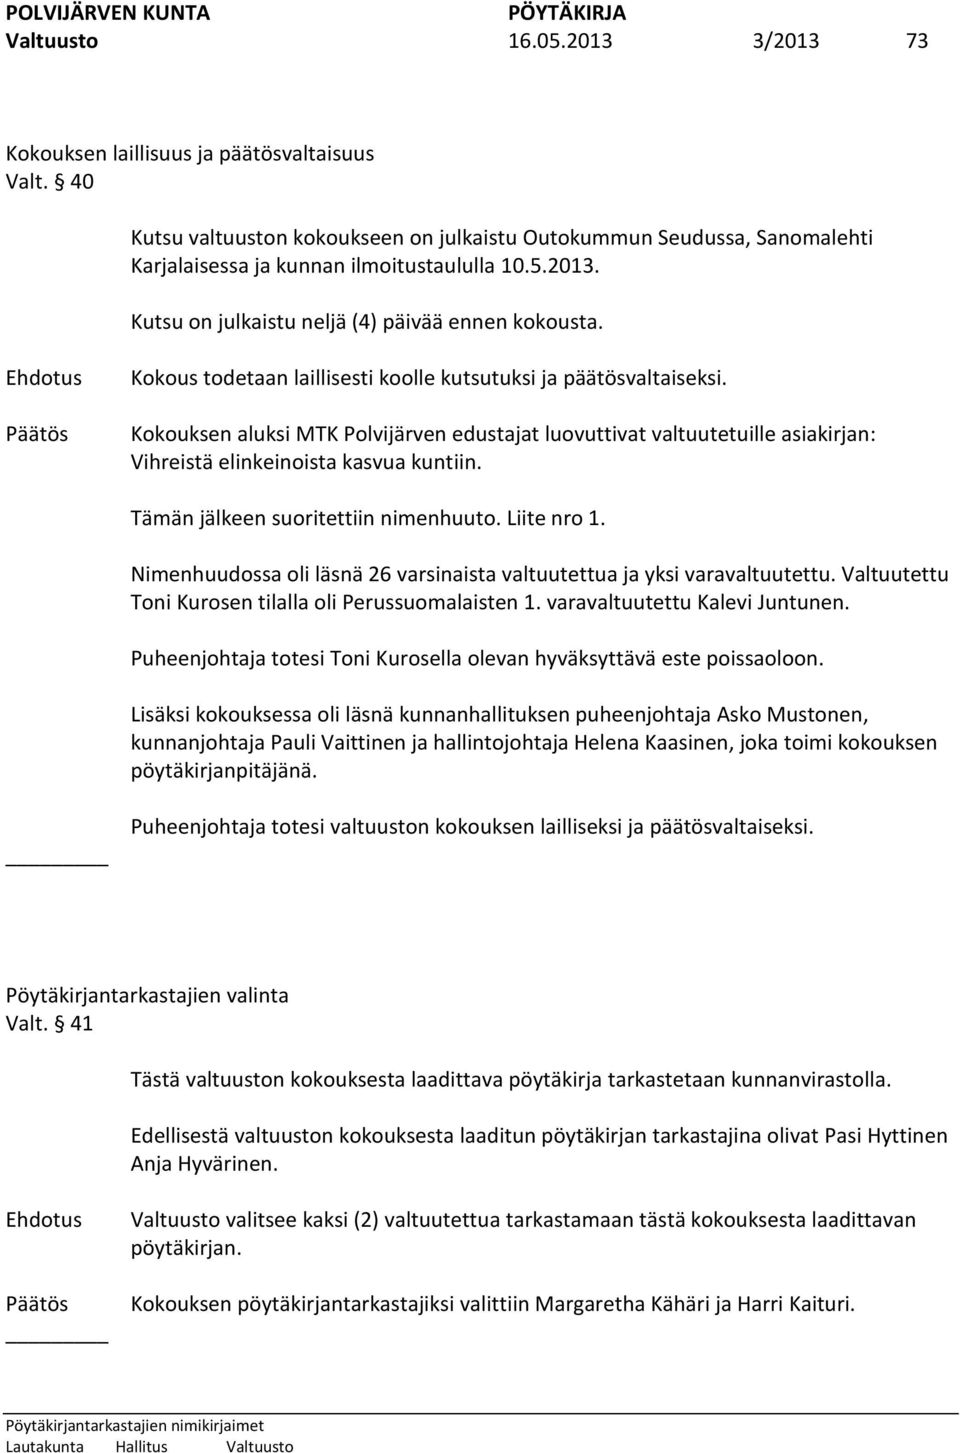 Kokouksen aluksi MTK Polvijärven edustajat luovuttivat valtuutetuille asiakirjan: Vihreistä elinkeinoista kasvua kuntiin. Tämän jälkeen suoritettiin nimenhuuto. Liite nro 1.